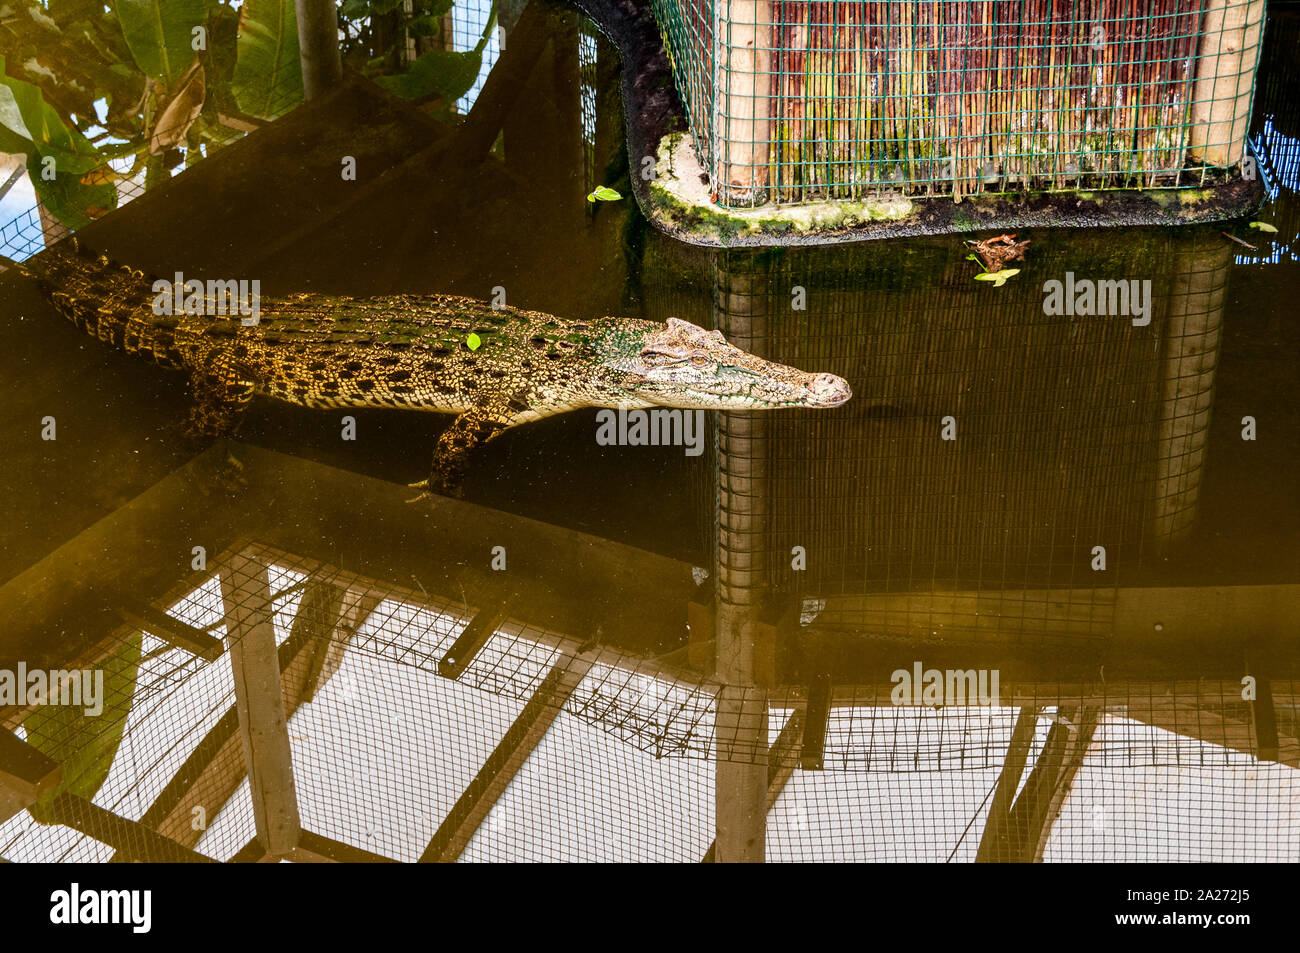 Un arancio-marrone coccodrillo con motivi geometrici regolari contrassegni neri nuota da sotto una schermata con la sua testa e muso appena al di sopra del livello dell'acqua Foto Stock